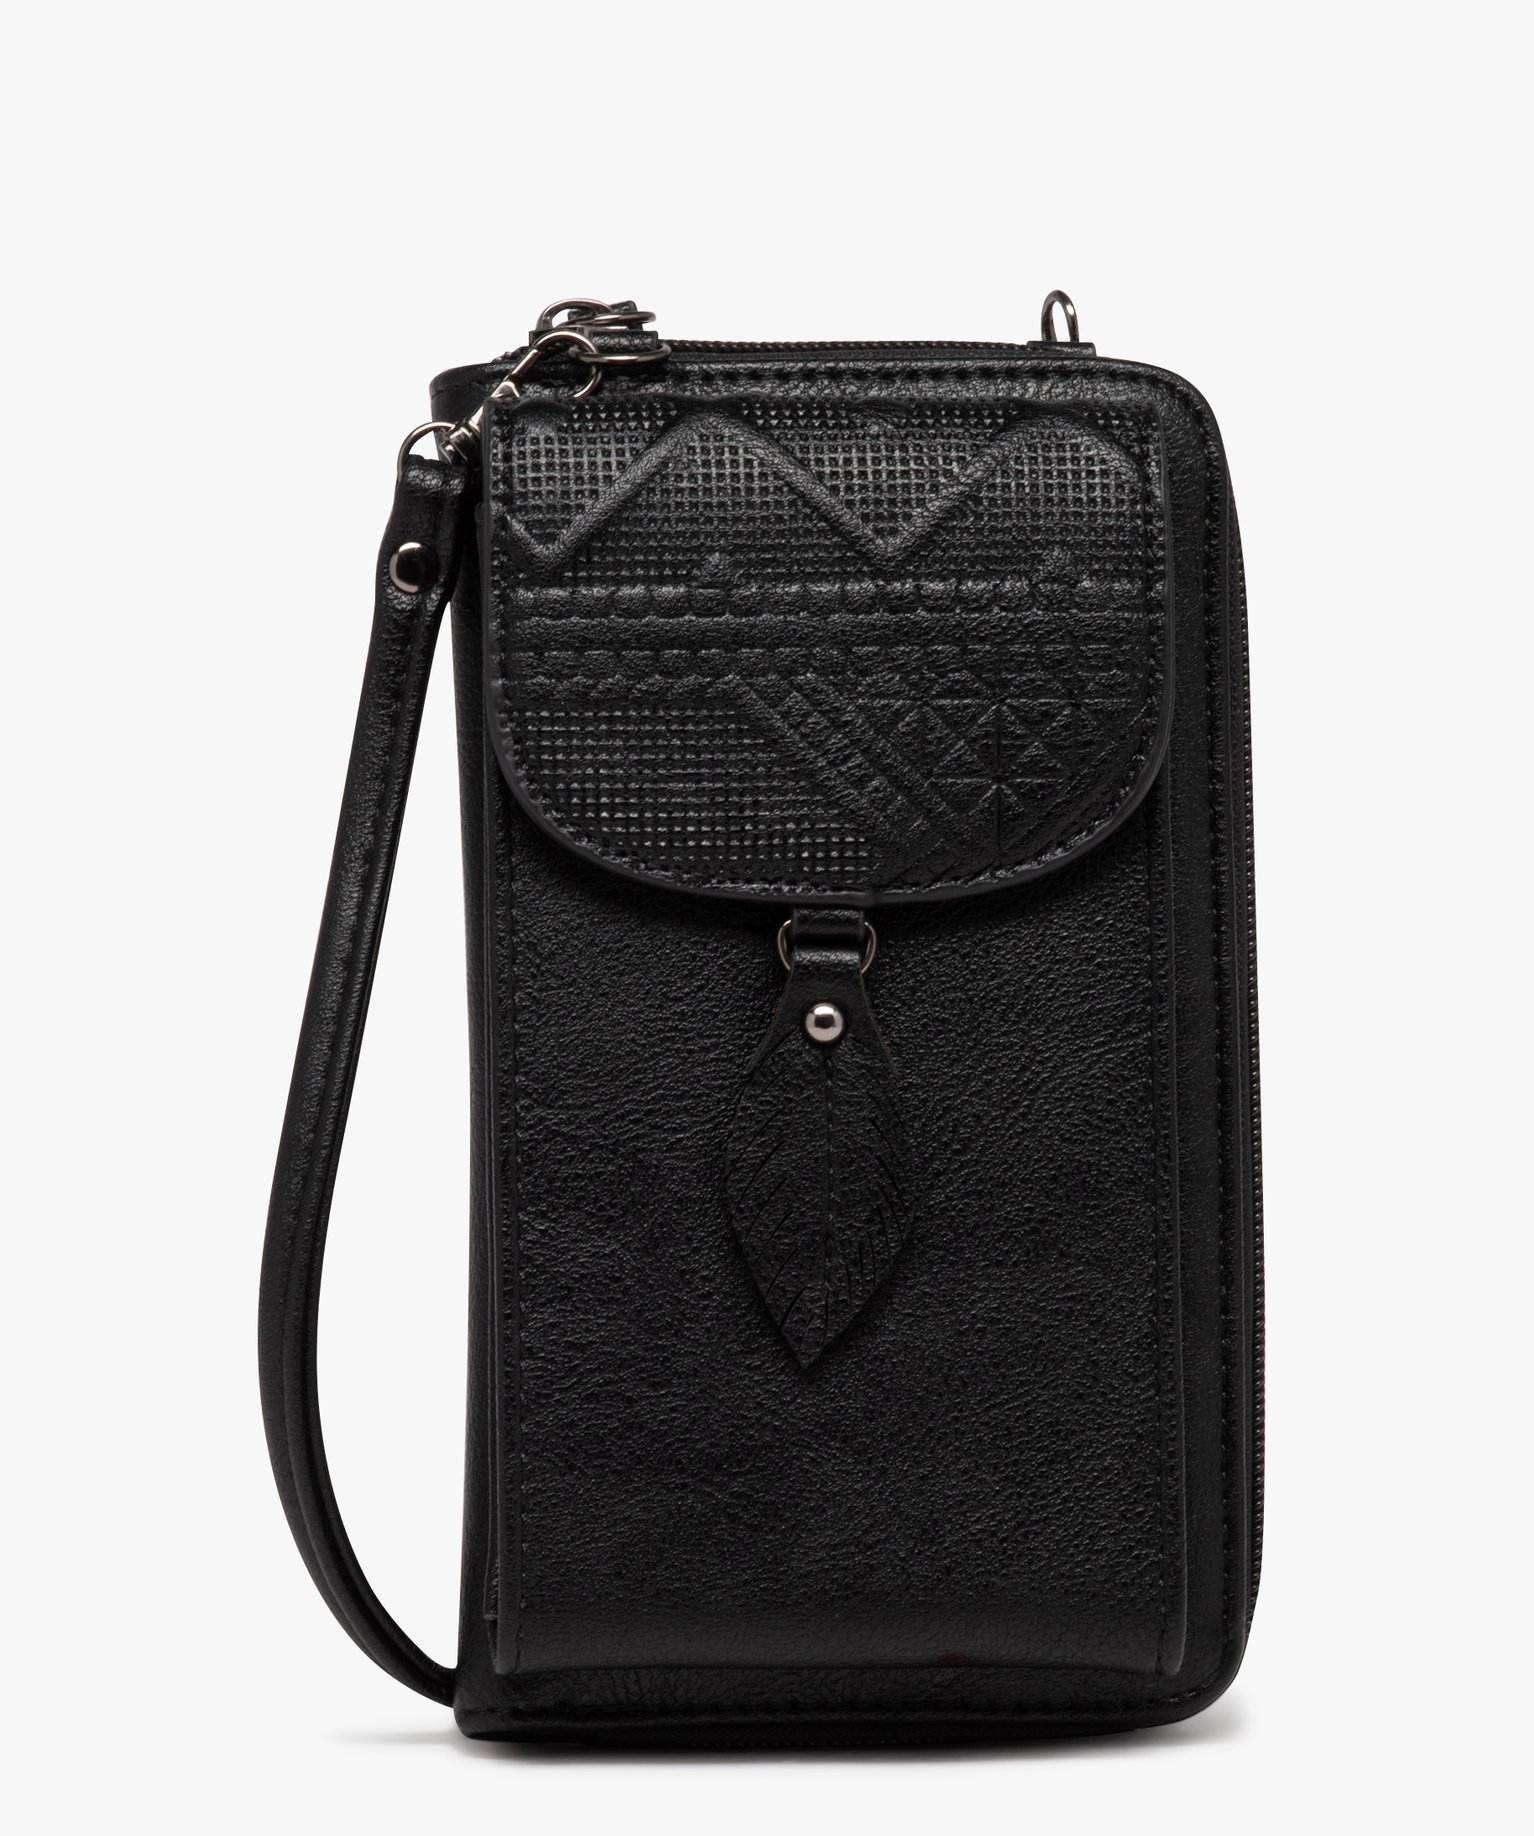 pochette porte-feuille avec bandouliere amovible femme noir porte-monnaie et portefeuilles